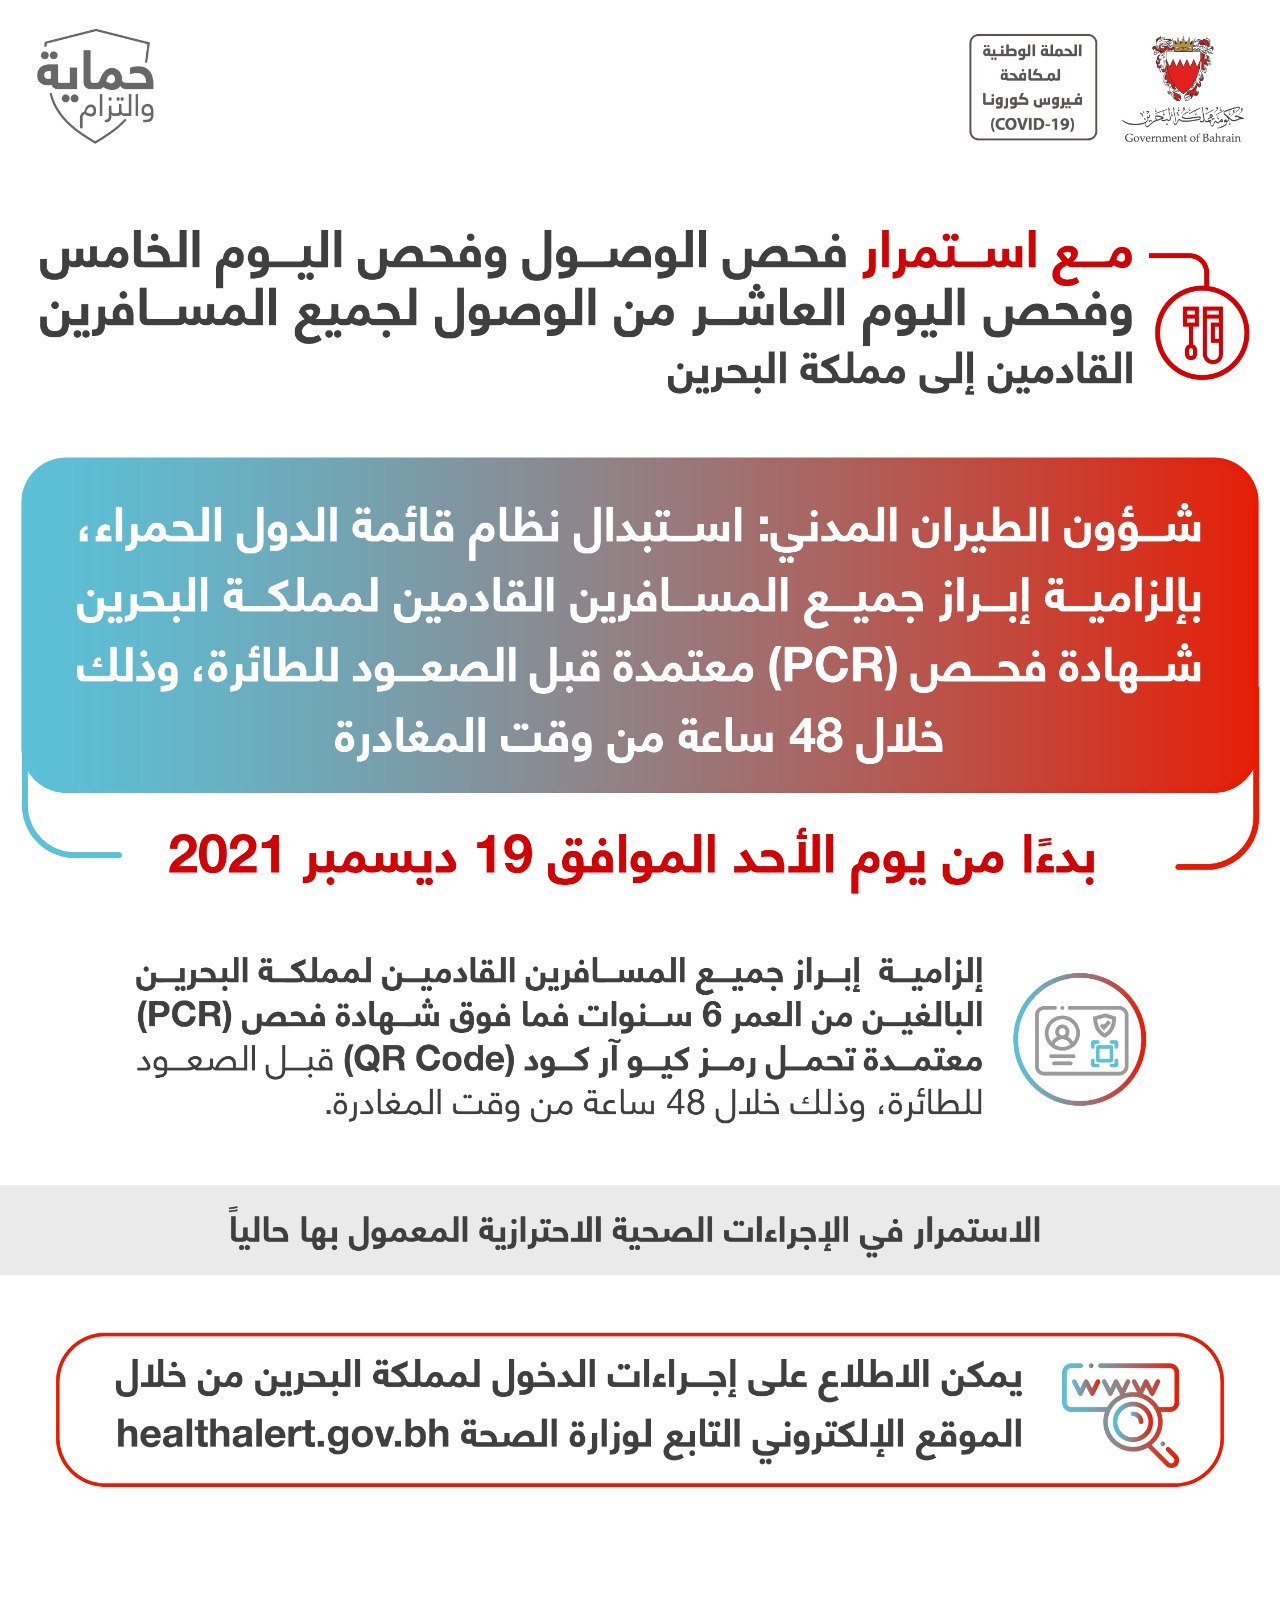 اصابات كورونا في البحرين اليوم